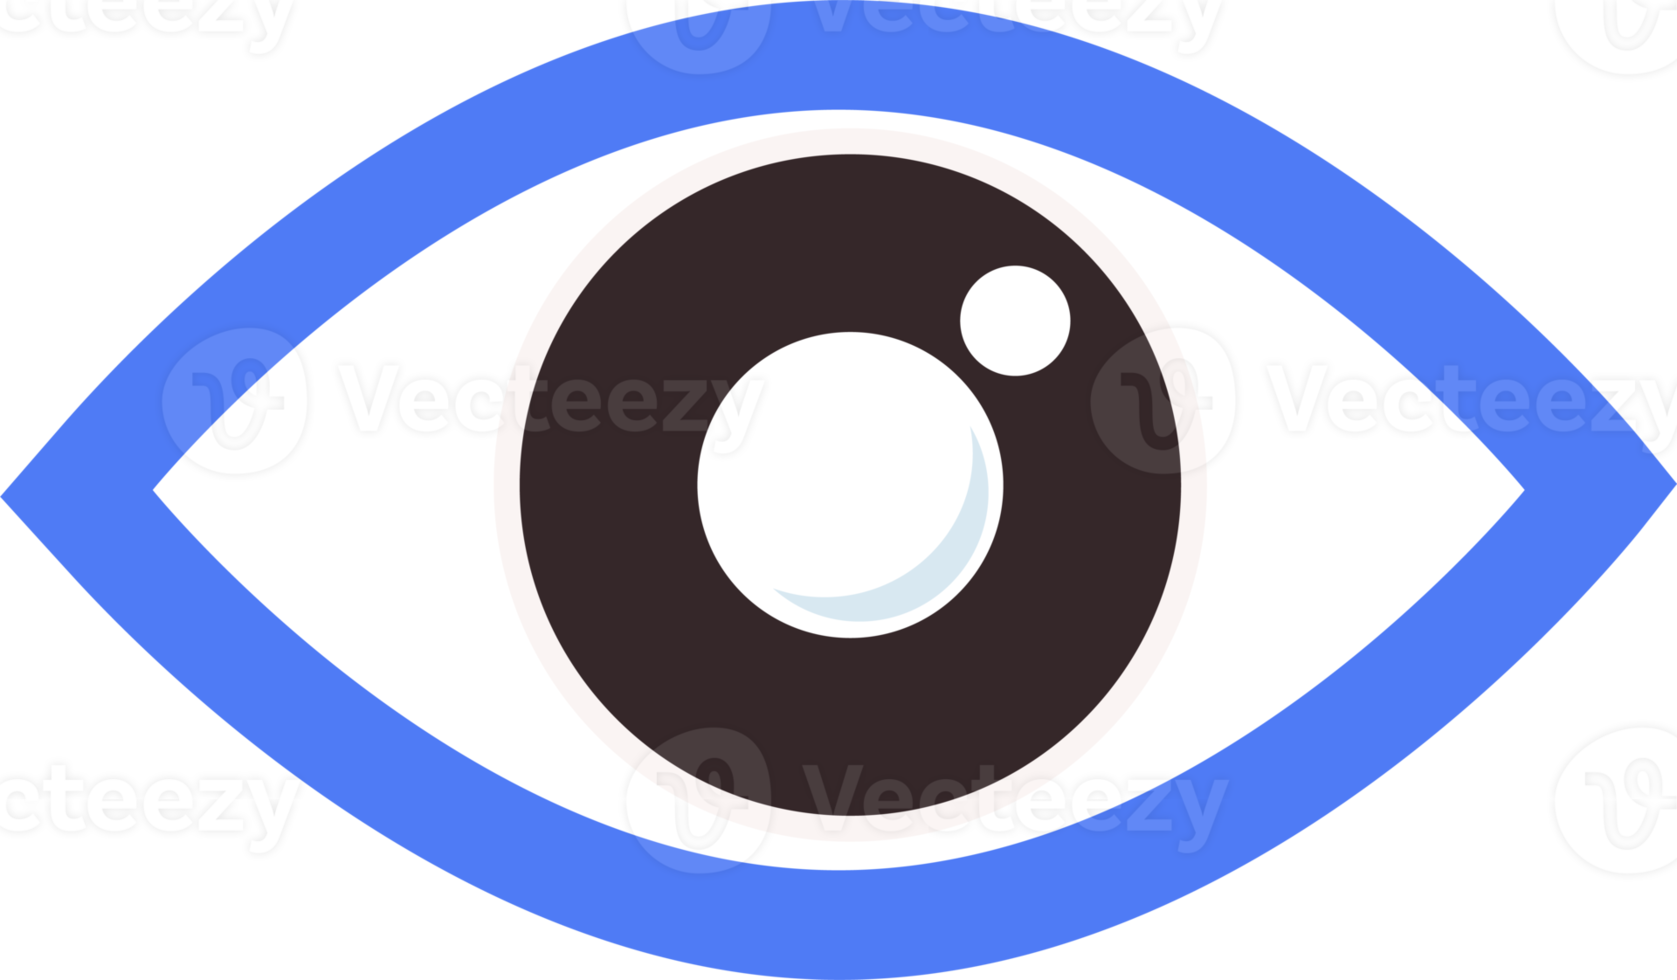 icona dell'occhio piatto png